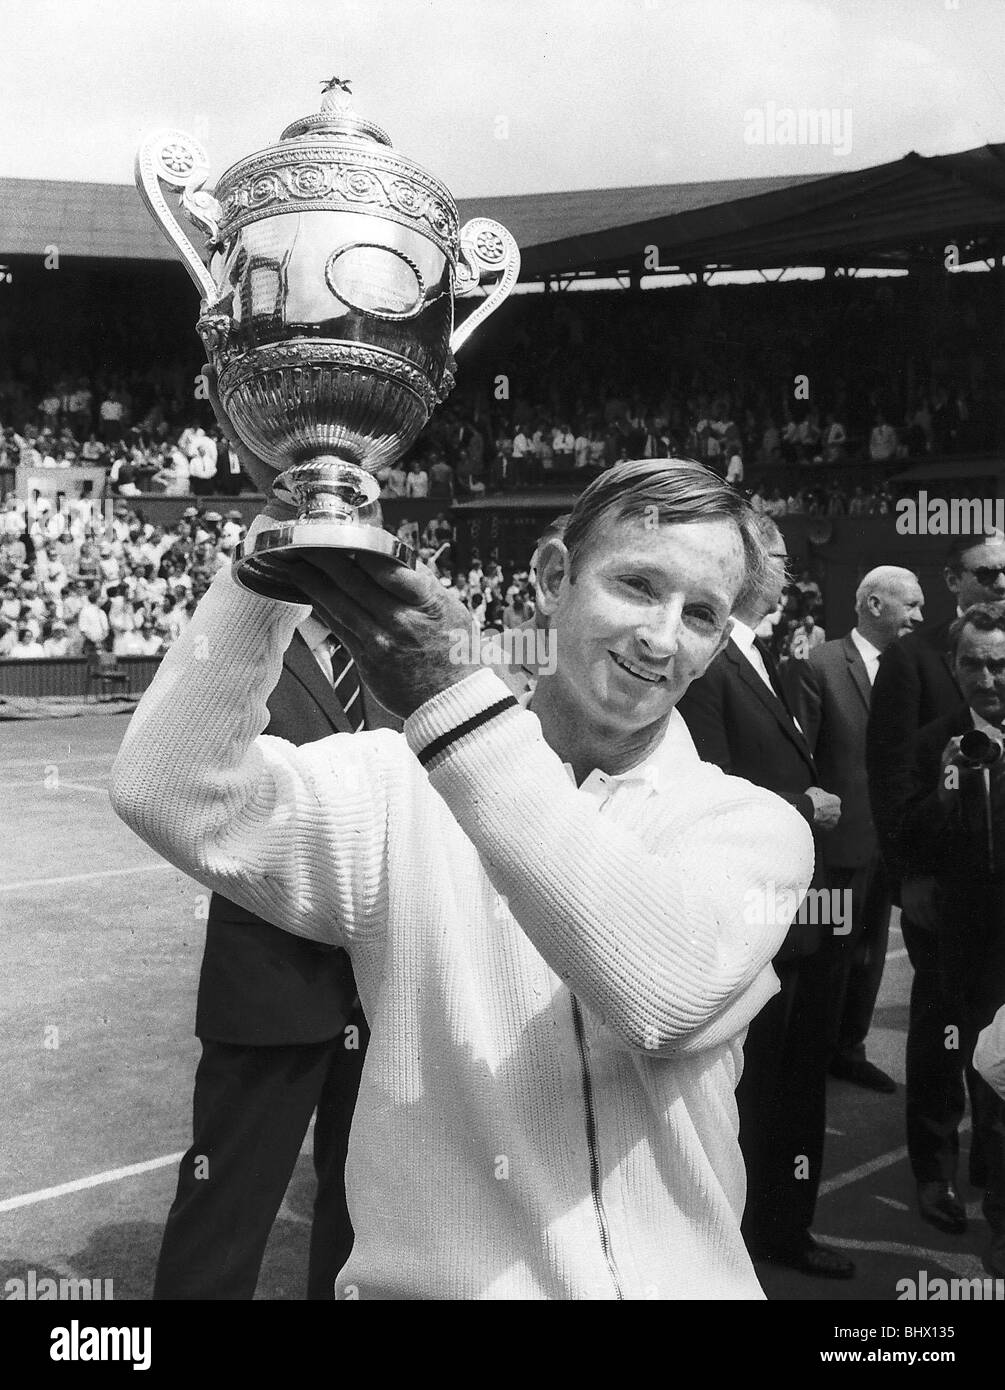 Rod Laver tennis player tenir mens des célibataires Wimbledon trophy en altitude Banque D'Images